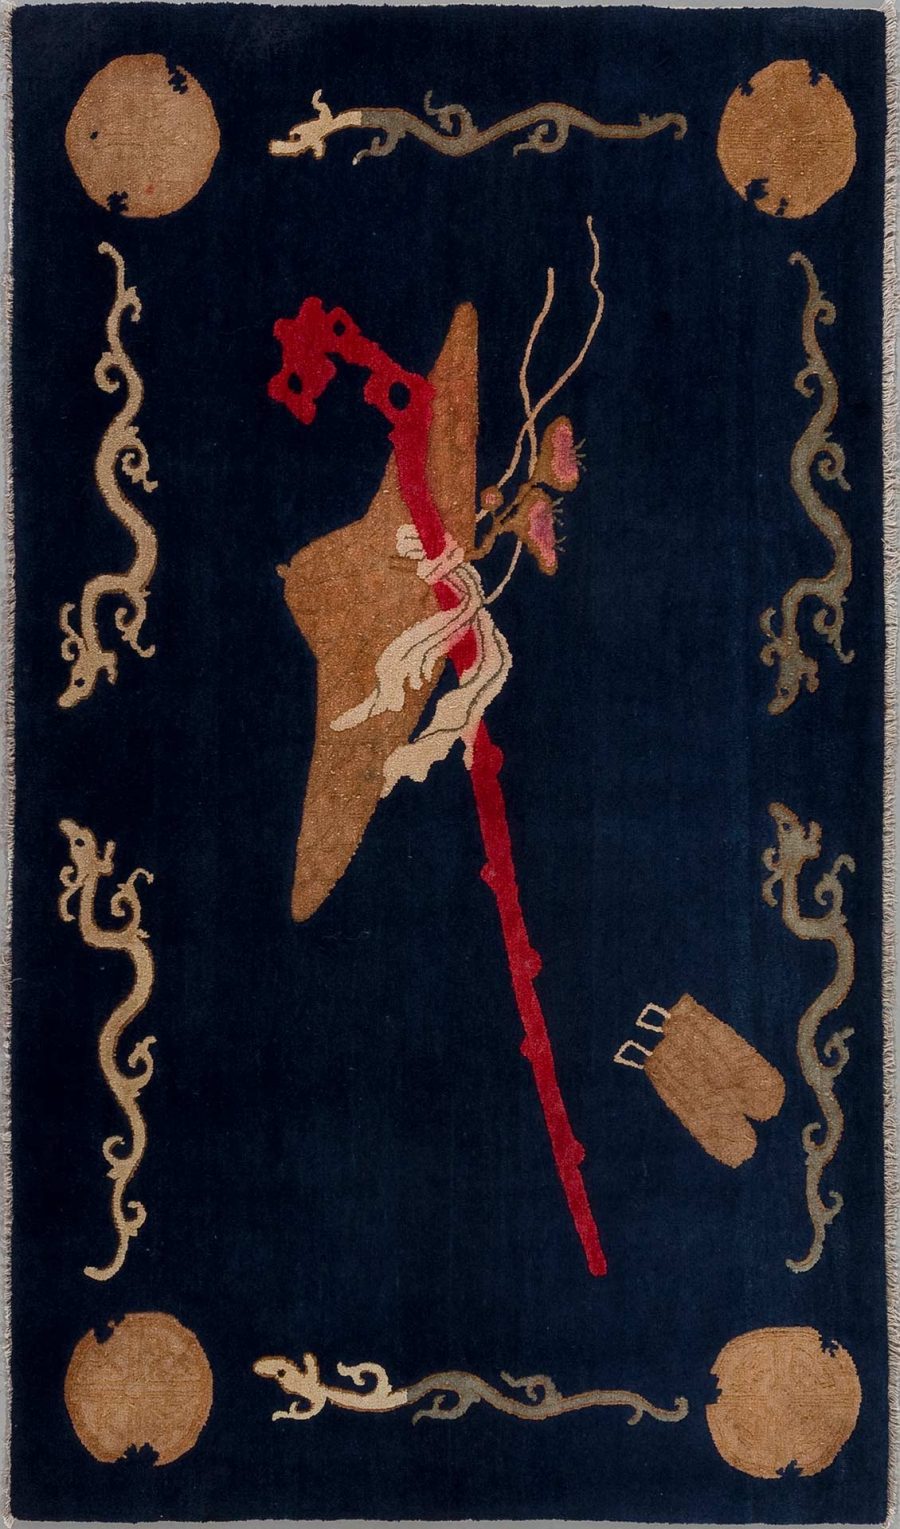 Antikes Wandteppich-Design mit dunkelblauem Hintergrund und traditionellen Mustern, darunter ein großer zentraler Drachen in Beige und Rot, umgeben von vier runden Medaillons und Wolkenmotiven in Beige.